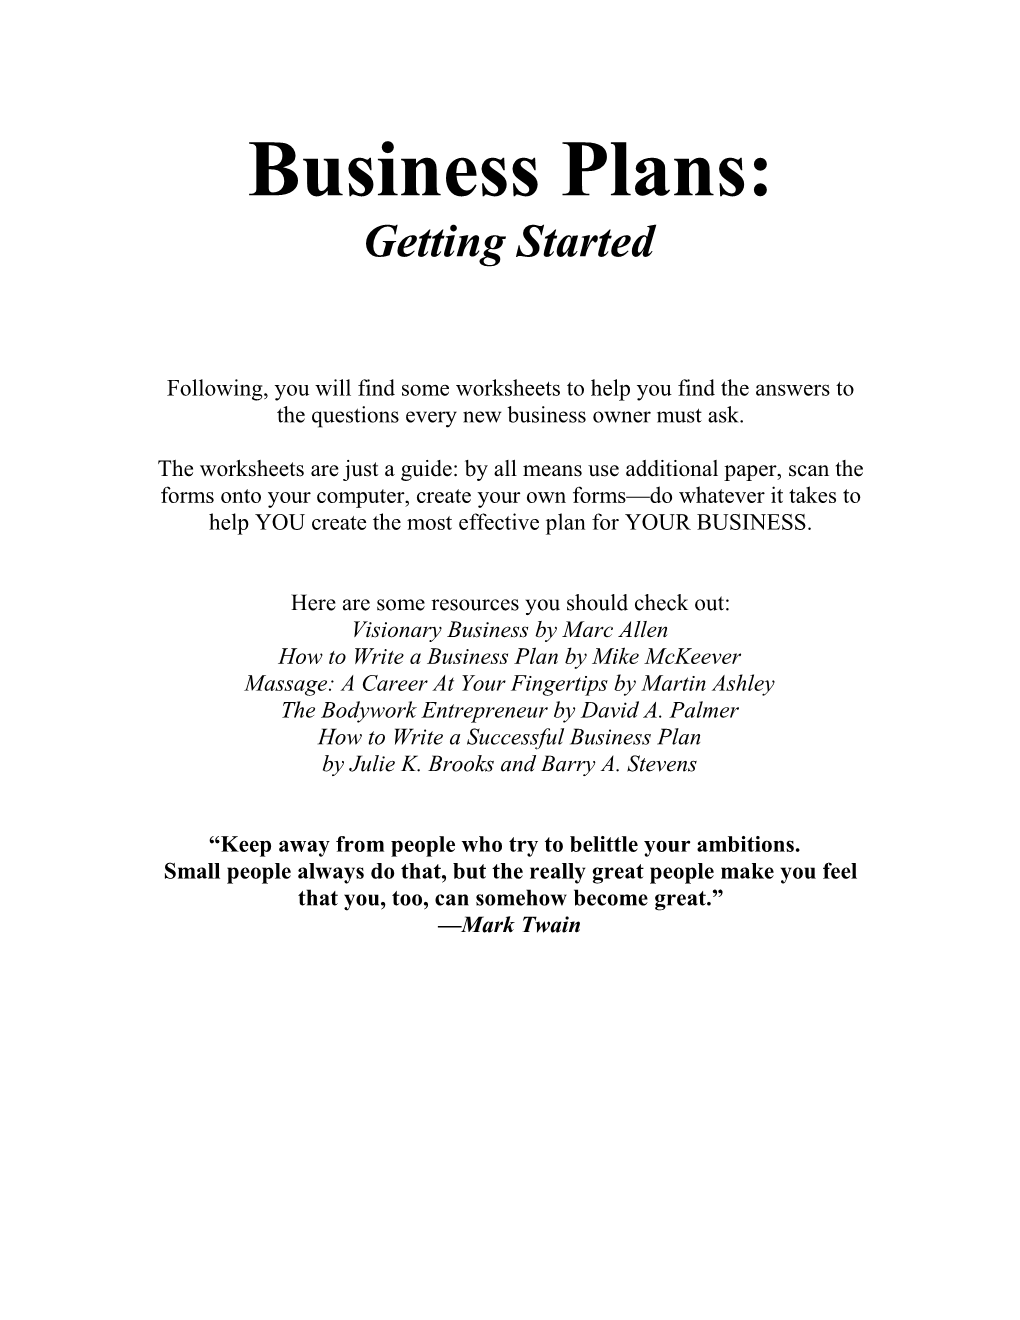 Marketing Plan Worksheets